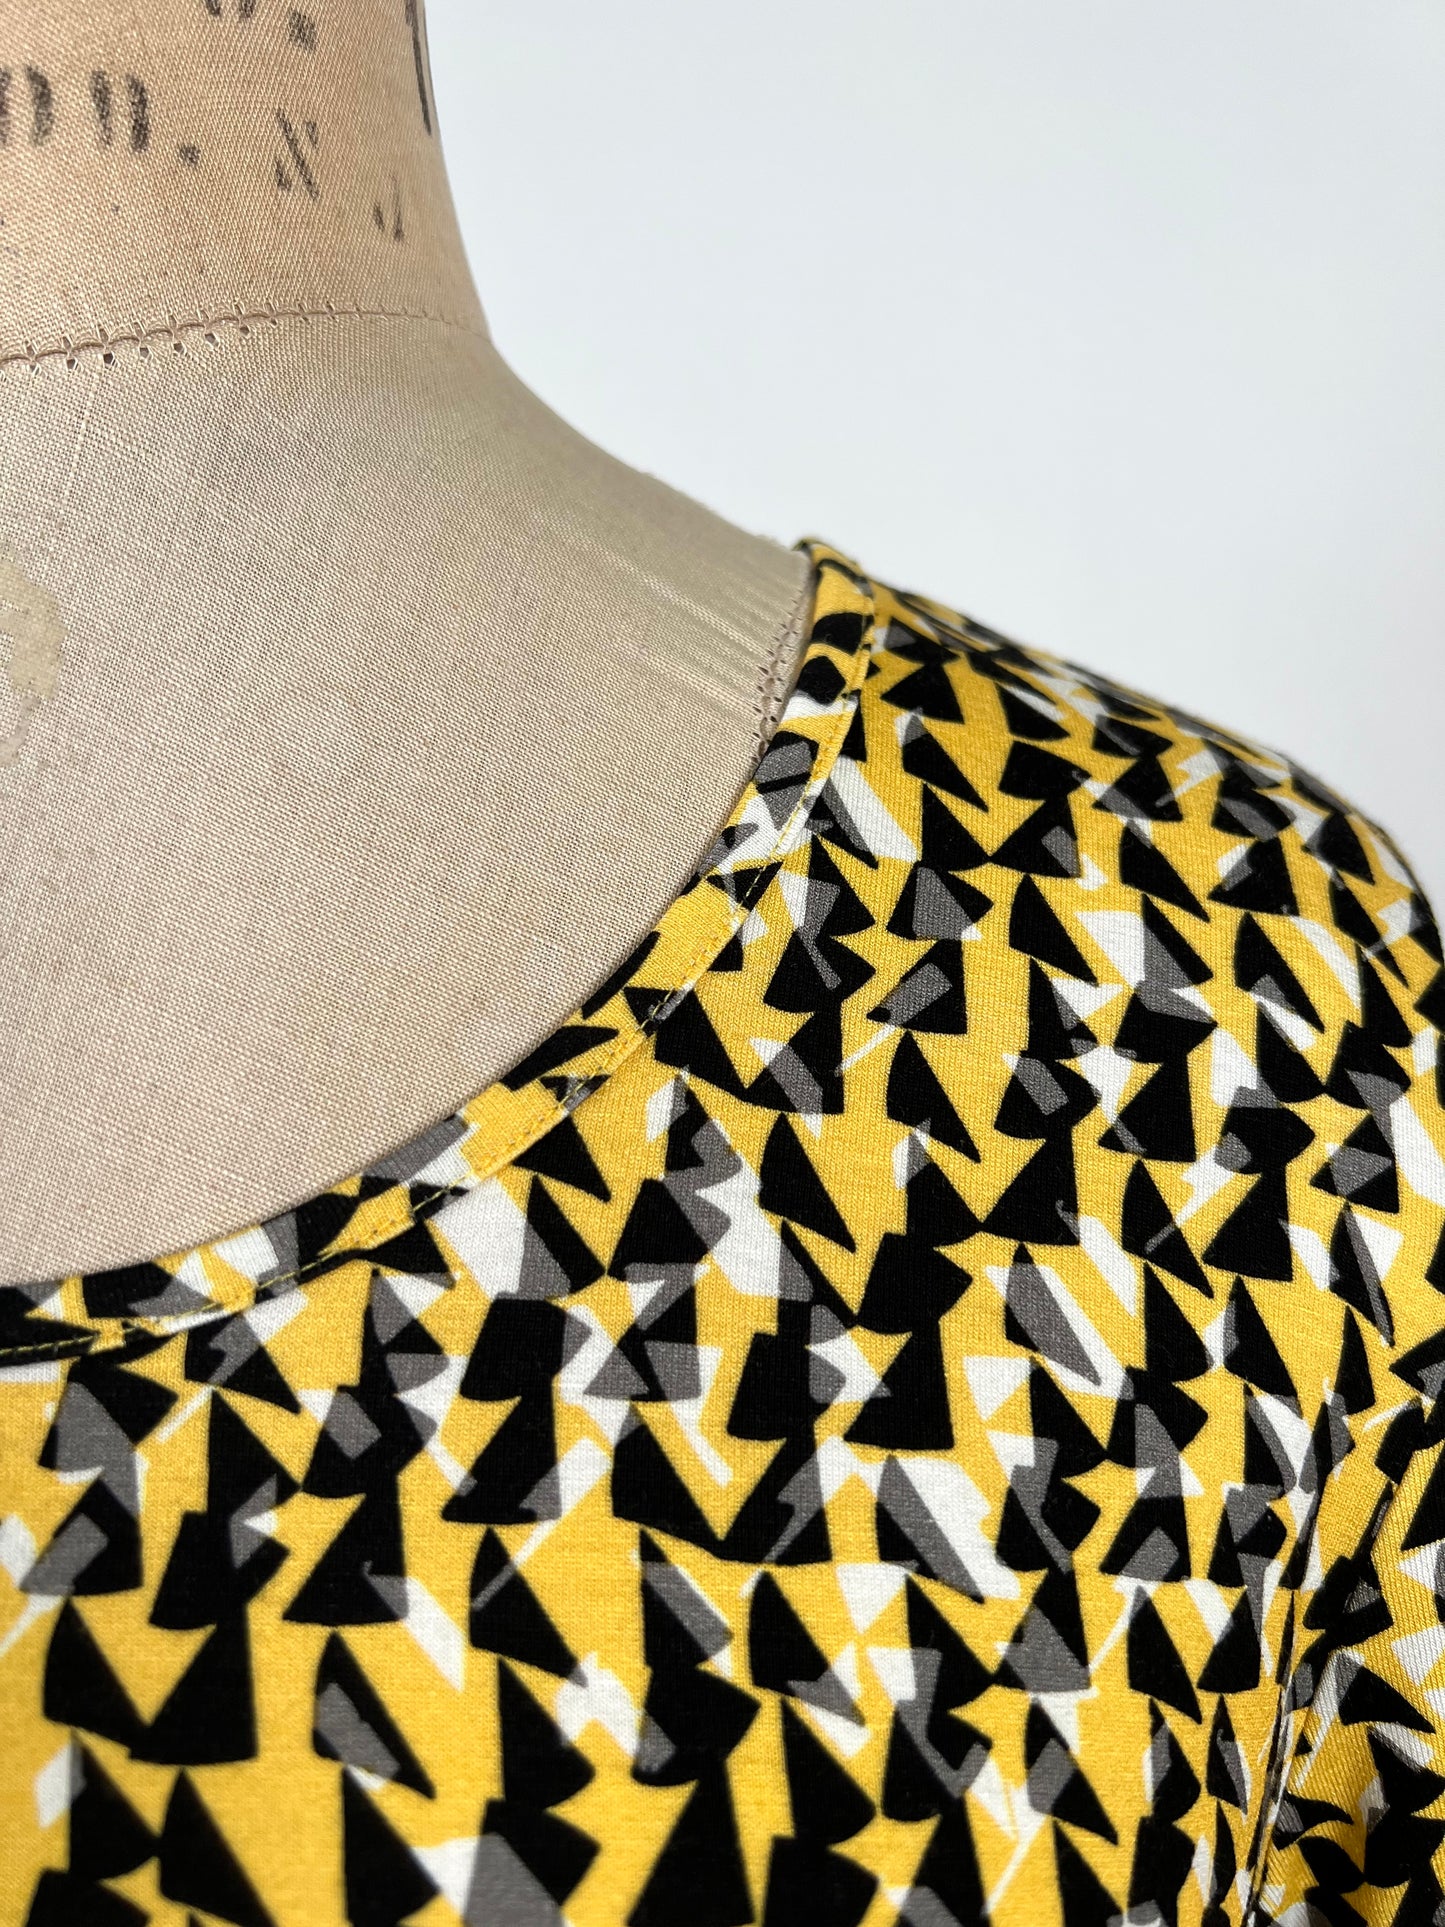 Chandail jaune à imprimé triangulaire noir et blanc (10)